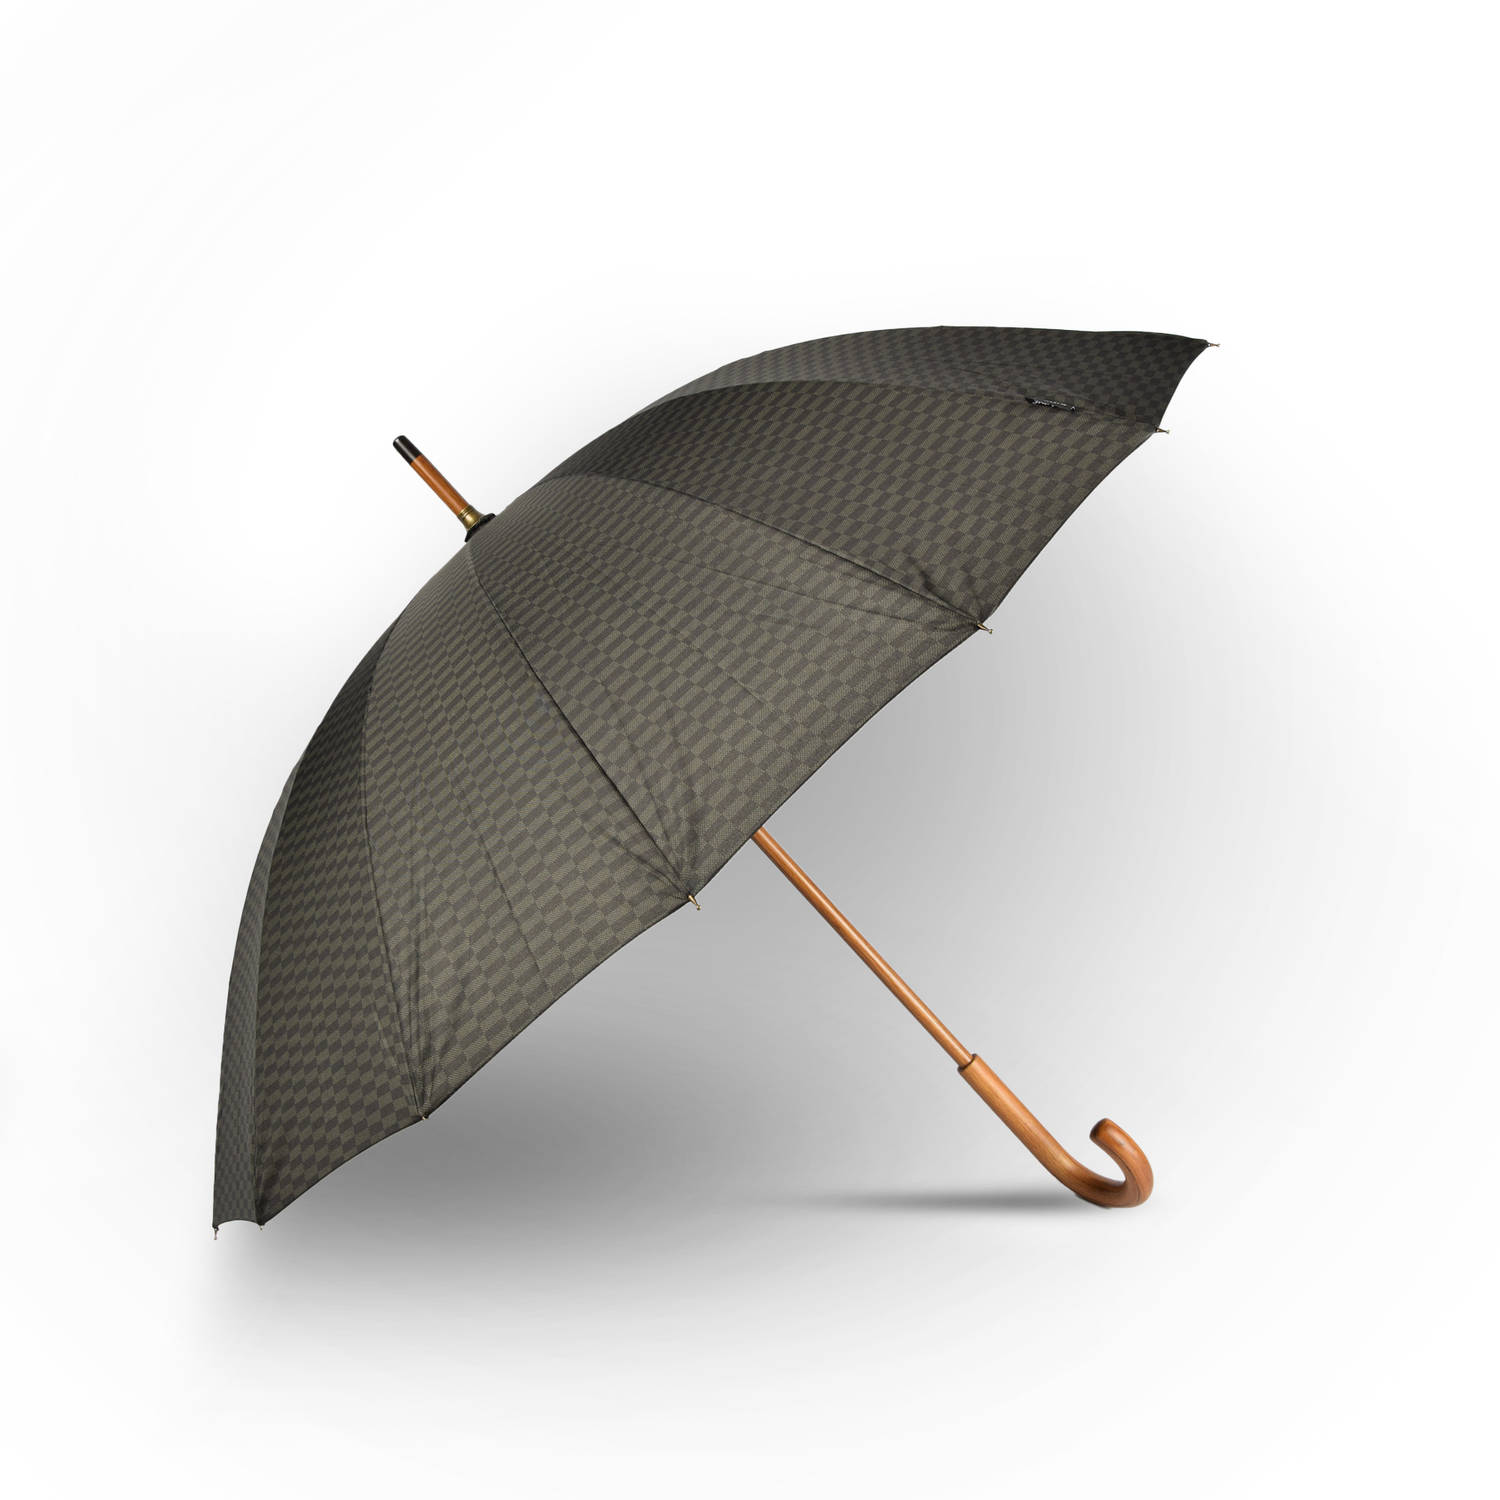 Grote Grijs Paraplu met Houten Handgreep - Automatisch Windproof - Ø102cm - Geïnspireerd door Kingsman: The Secret Service - Polyester Pongee & Fiberglass